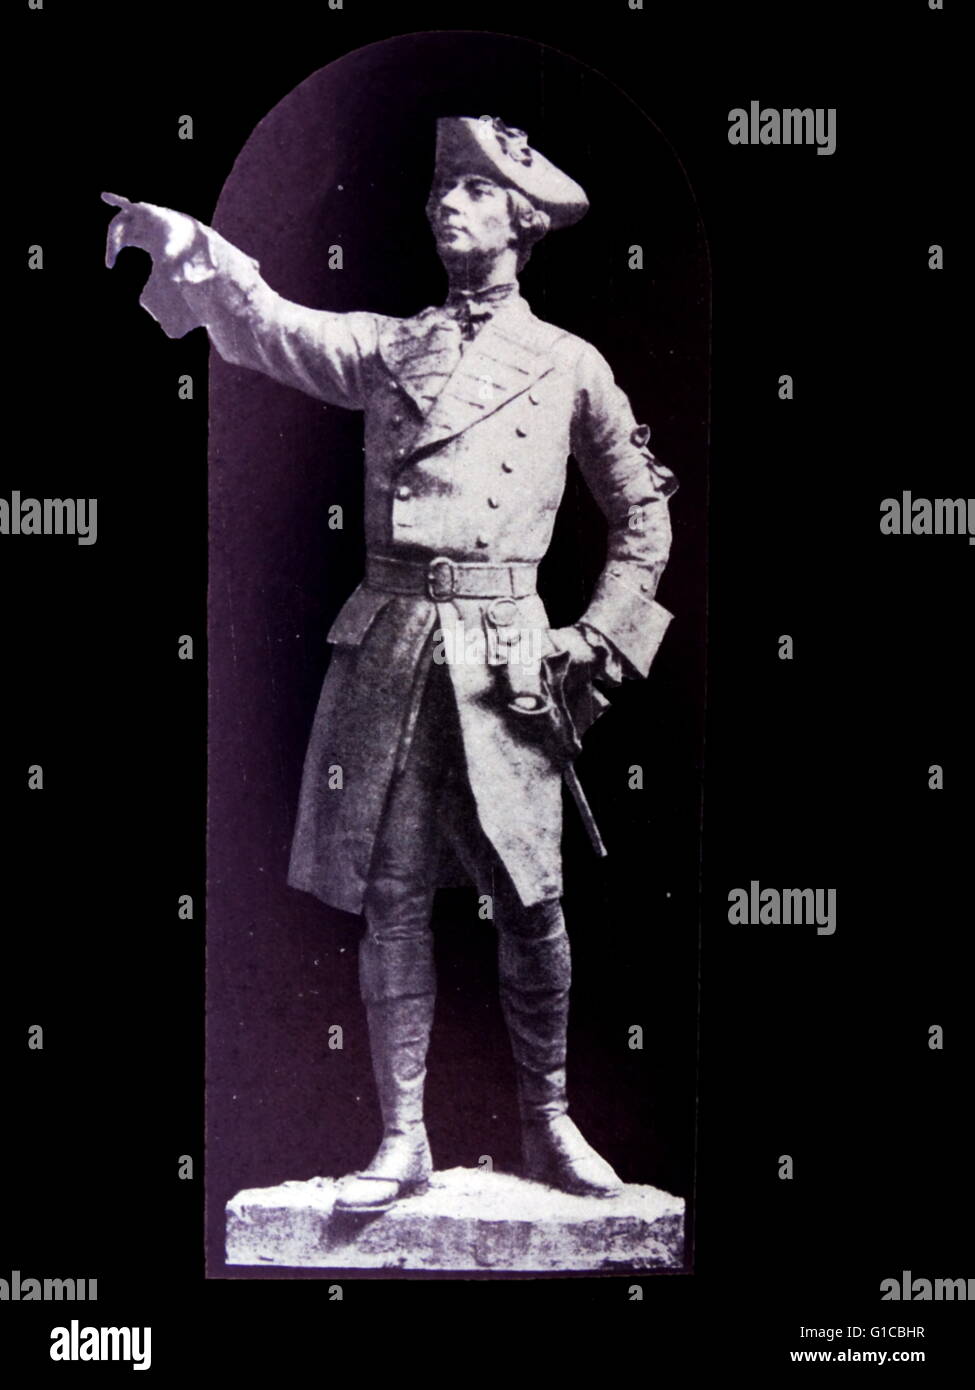 Statua di Maggiore Generale James Wolfe (1727-1759) un ufficiale britannico ricordata soprattutto per la sua vittoria sui francesi battaglia presso la battaglia delle Pianure di Abramo in Canada nel 1759 Foto Stock